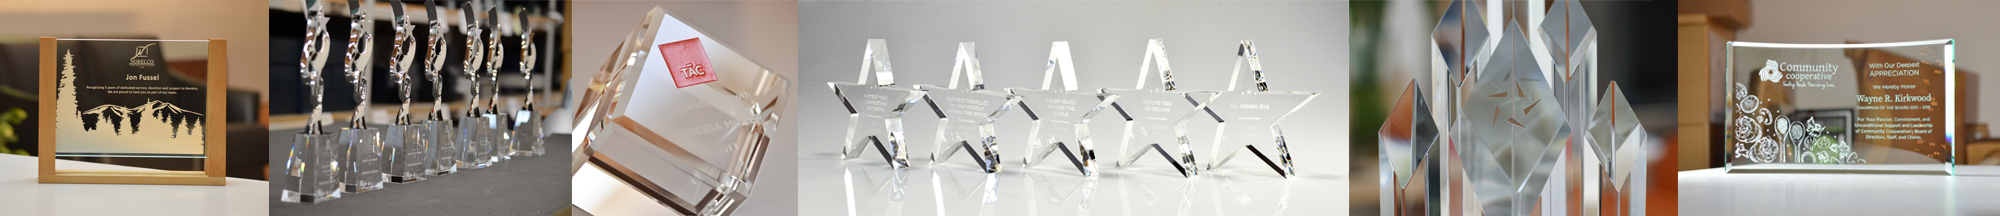 glass-awards-banner-3